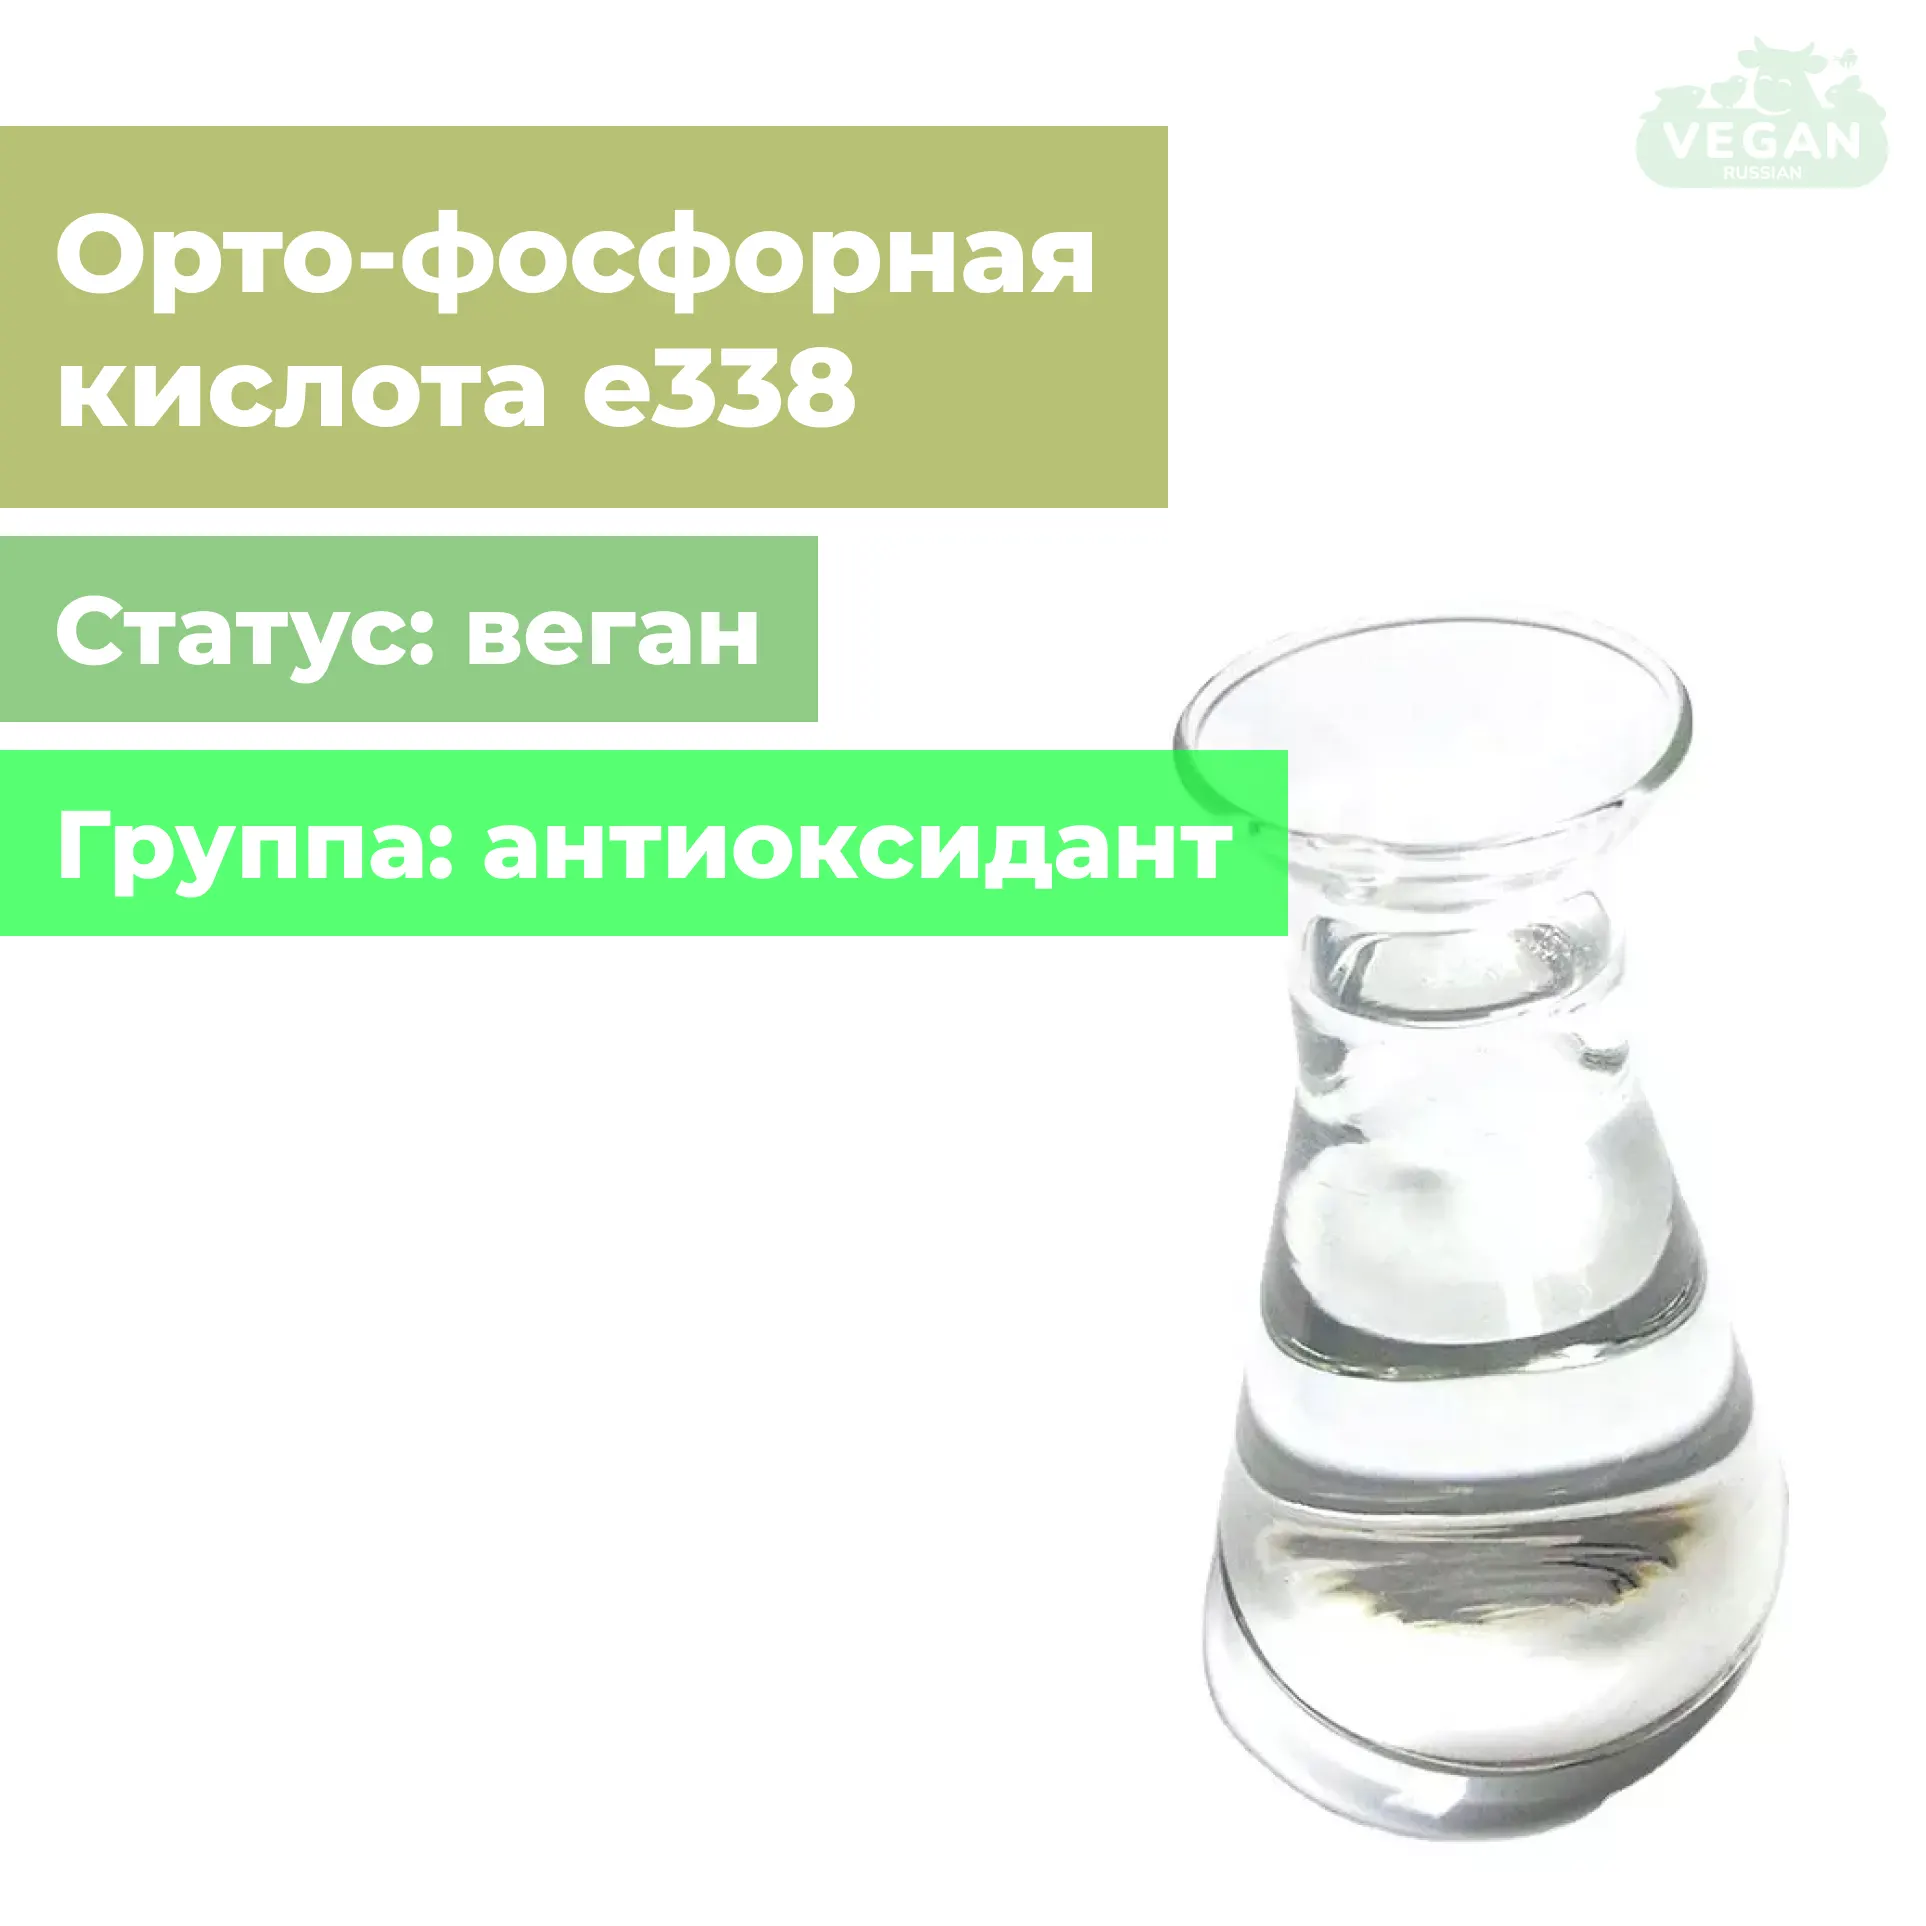 Орто-фосфорная кислота е338